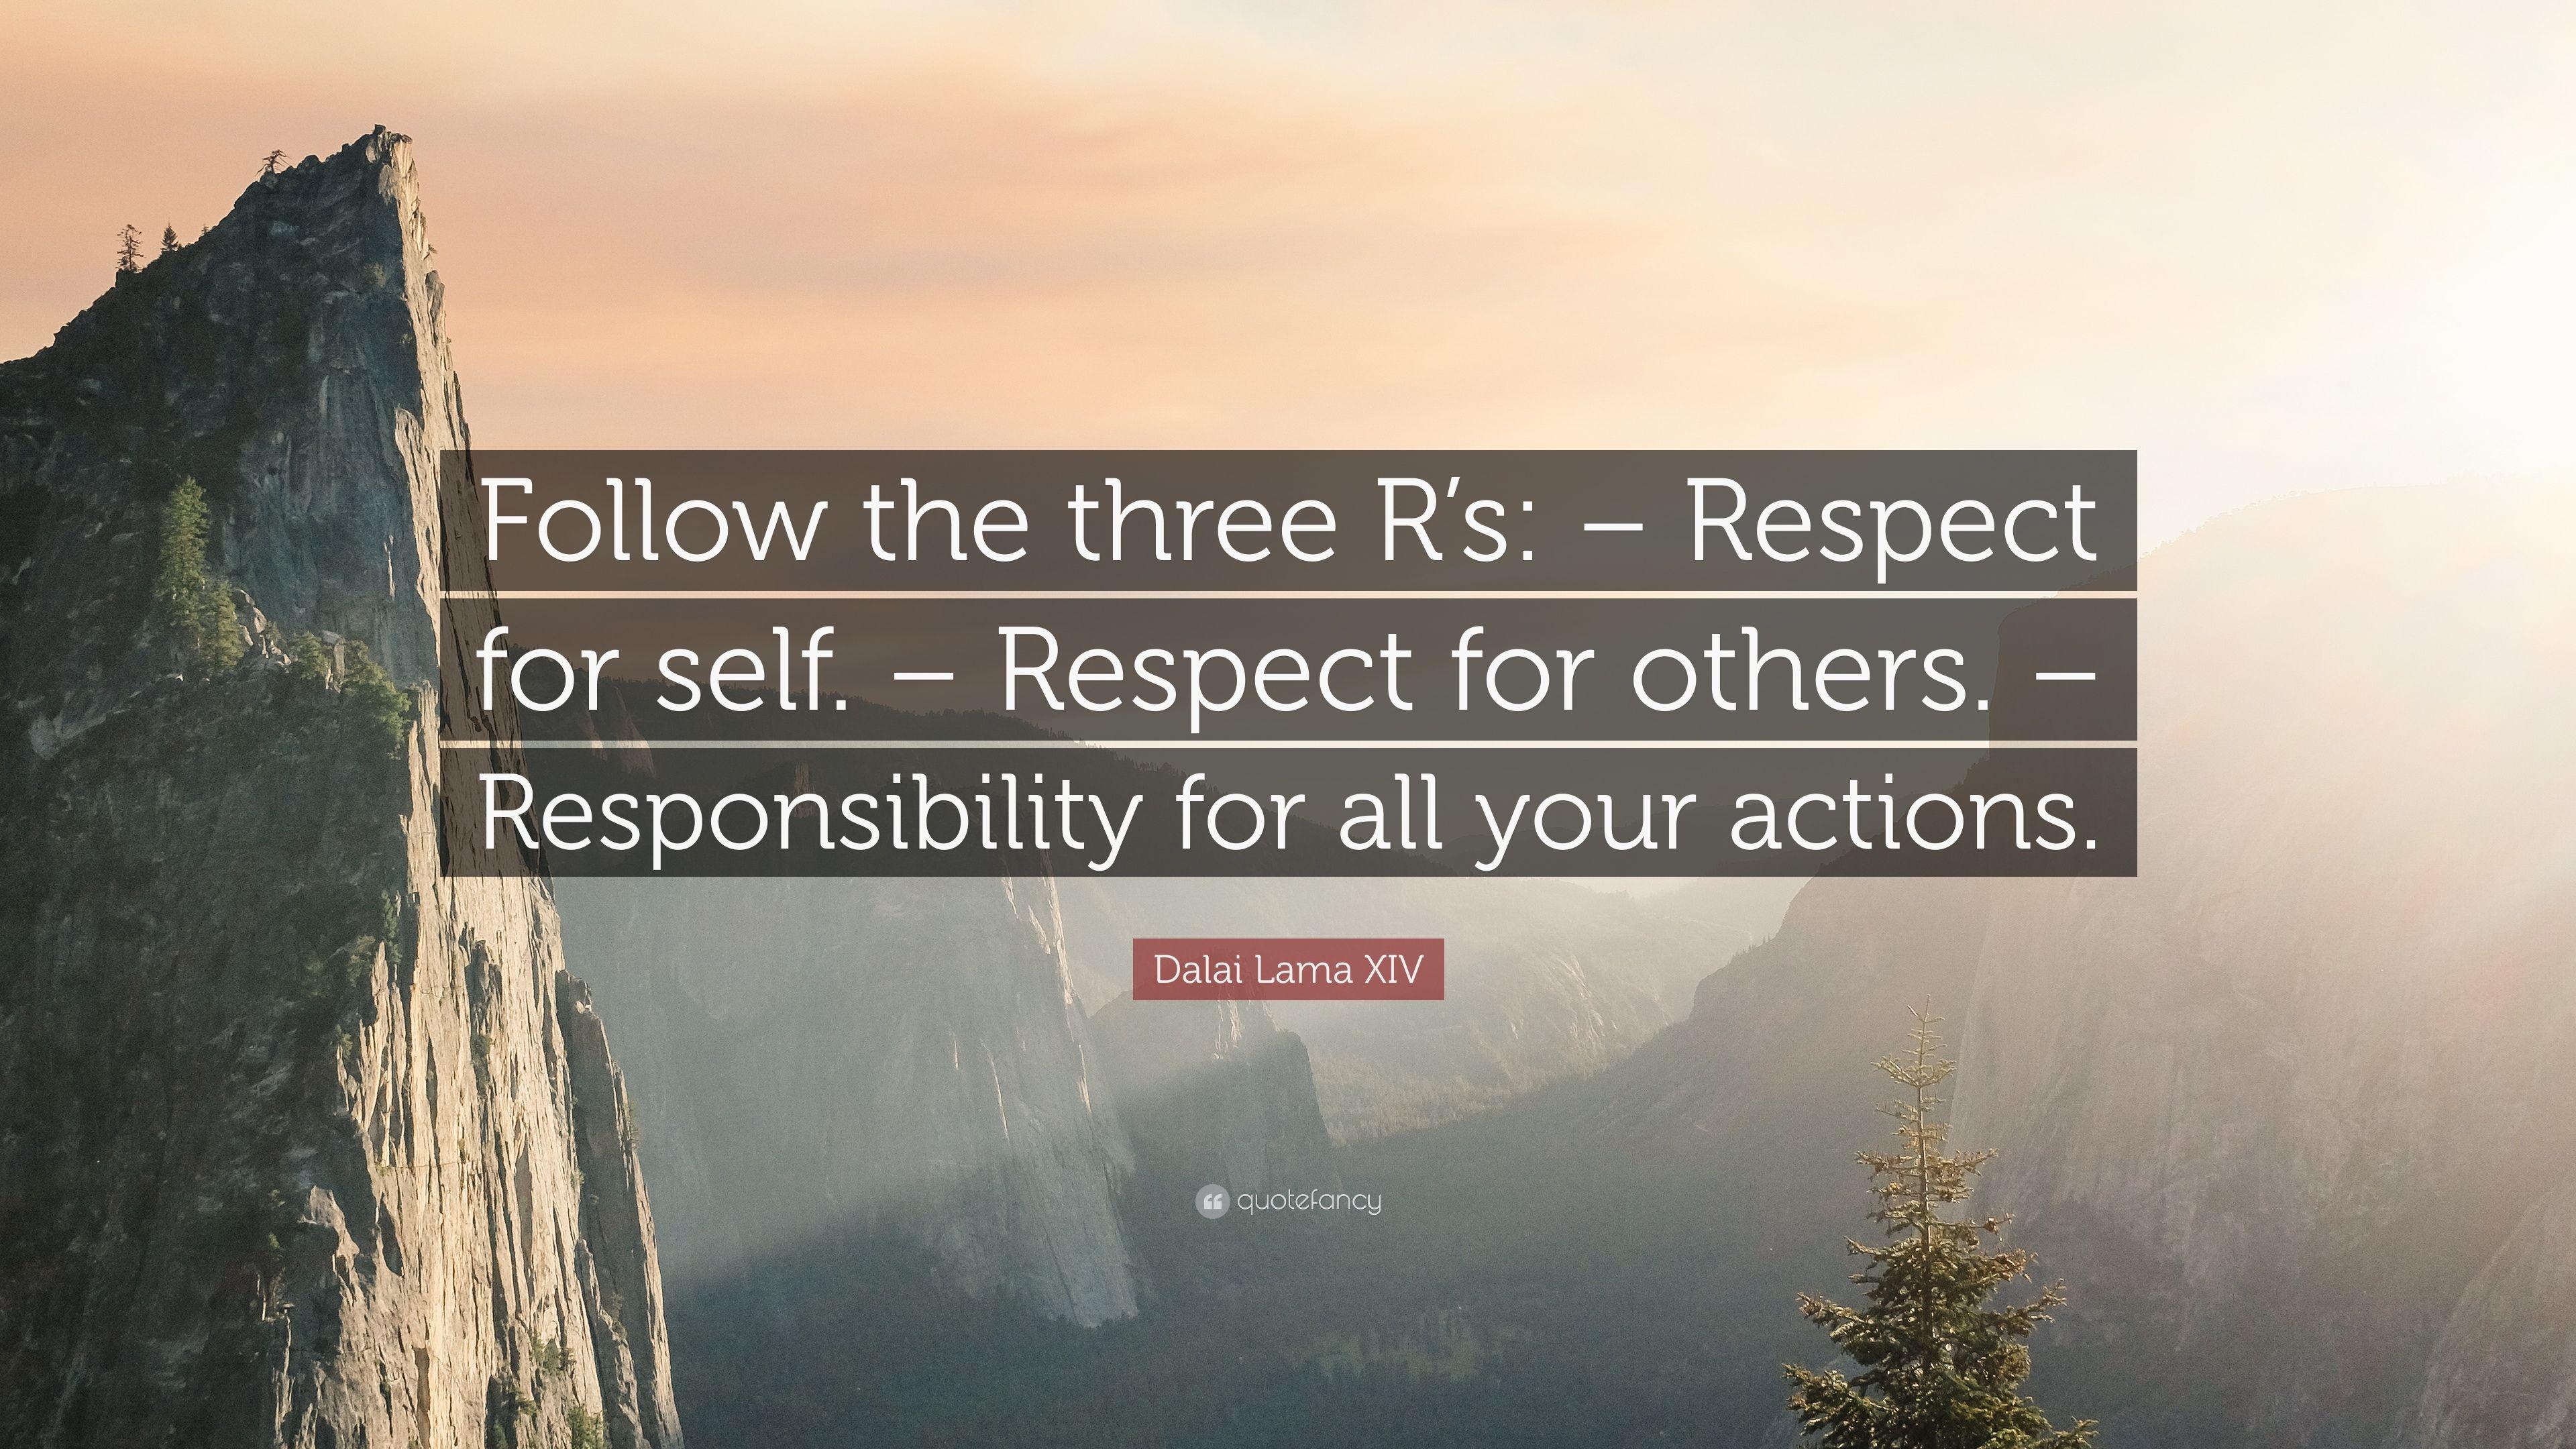 Dalai Lama XIV Quote: “Follow the three R's